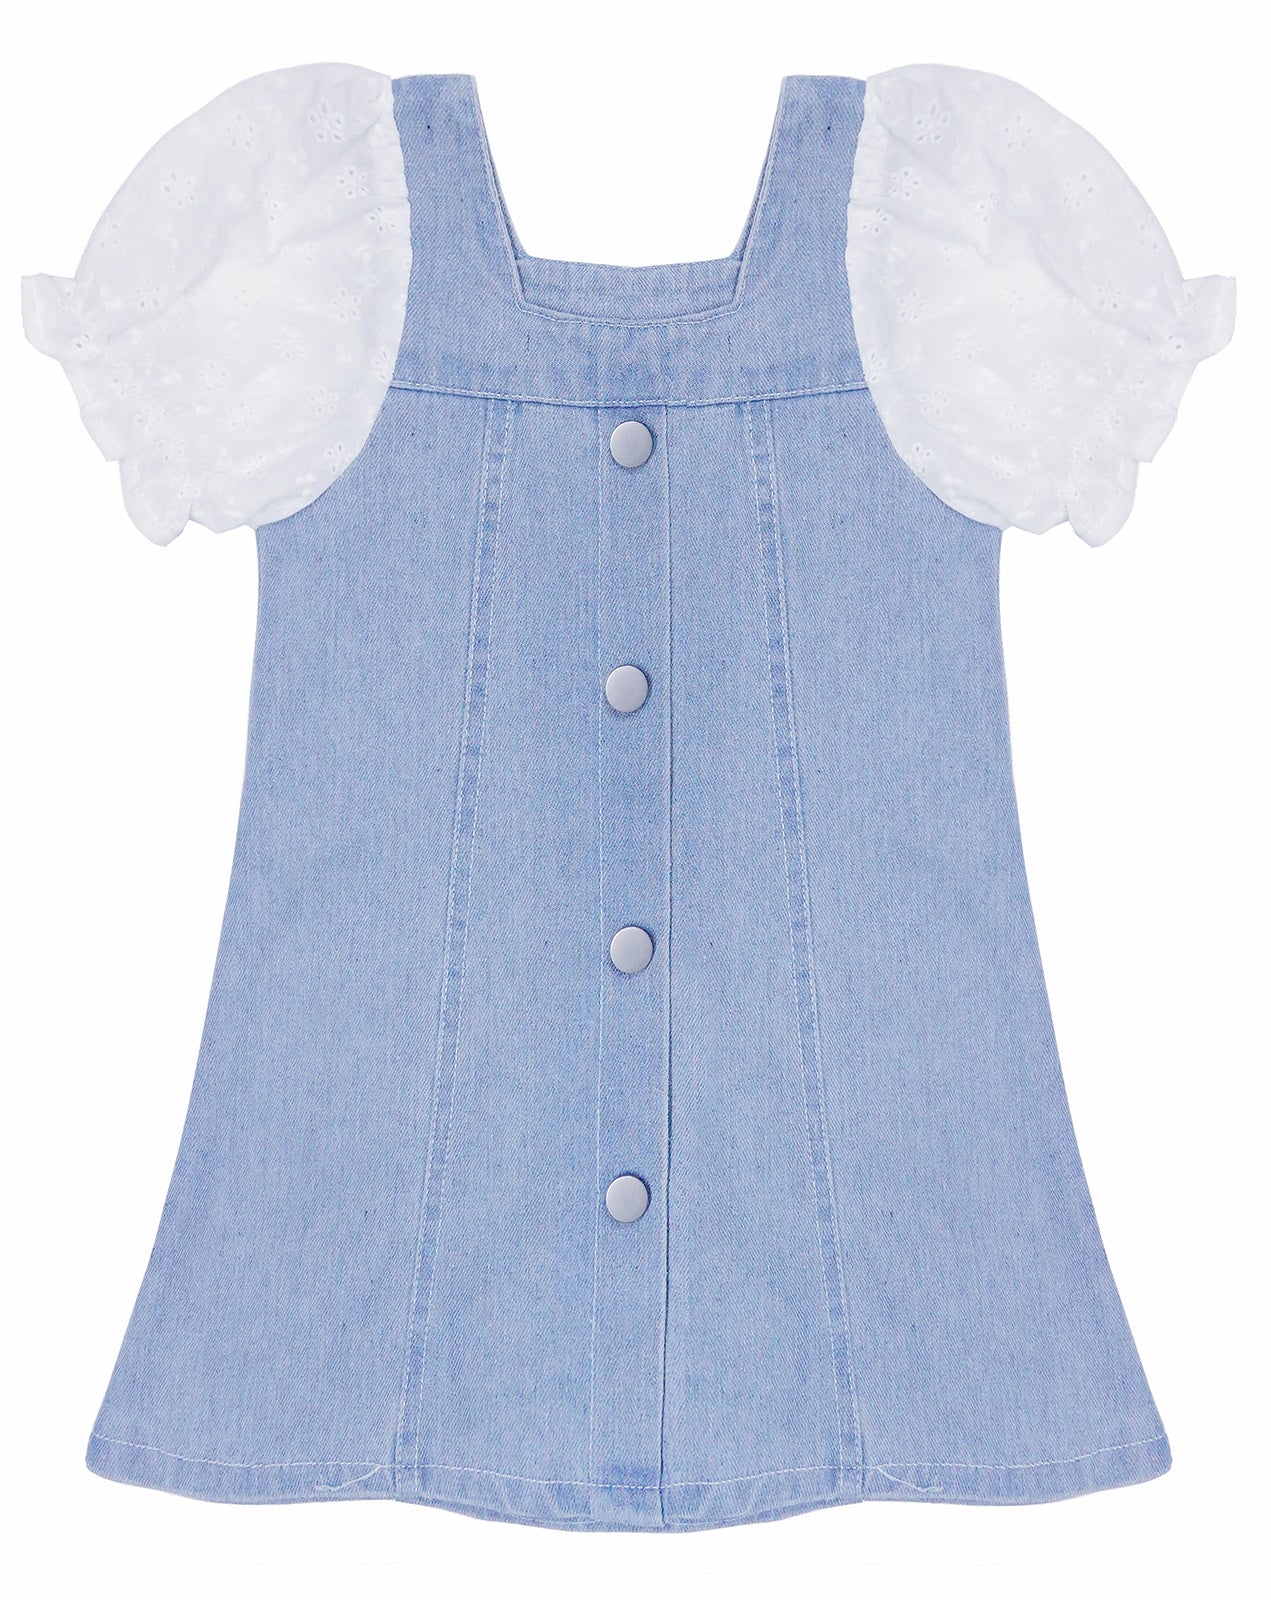 Baby Little Girl Denim Dress,Summer Short Sleeve Denim Tops